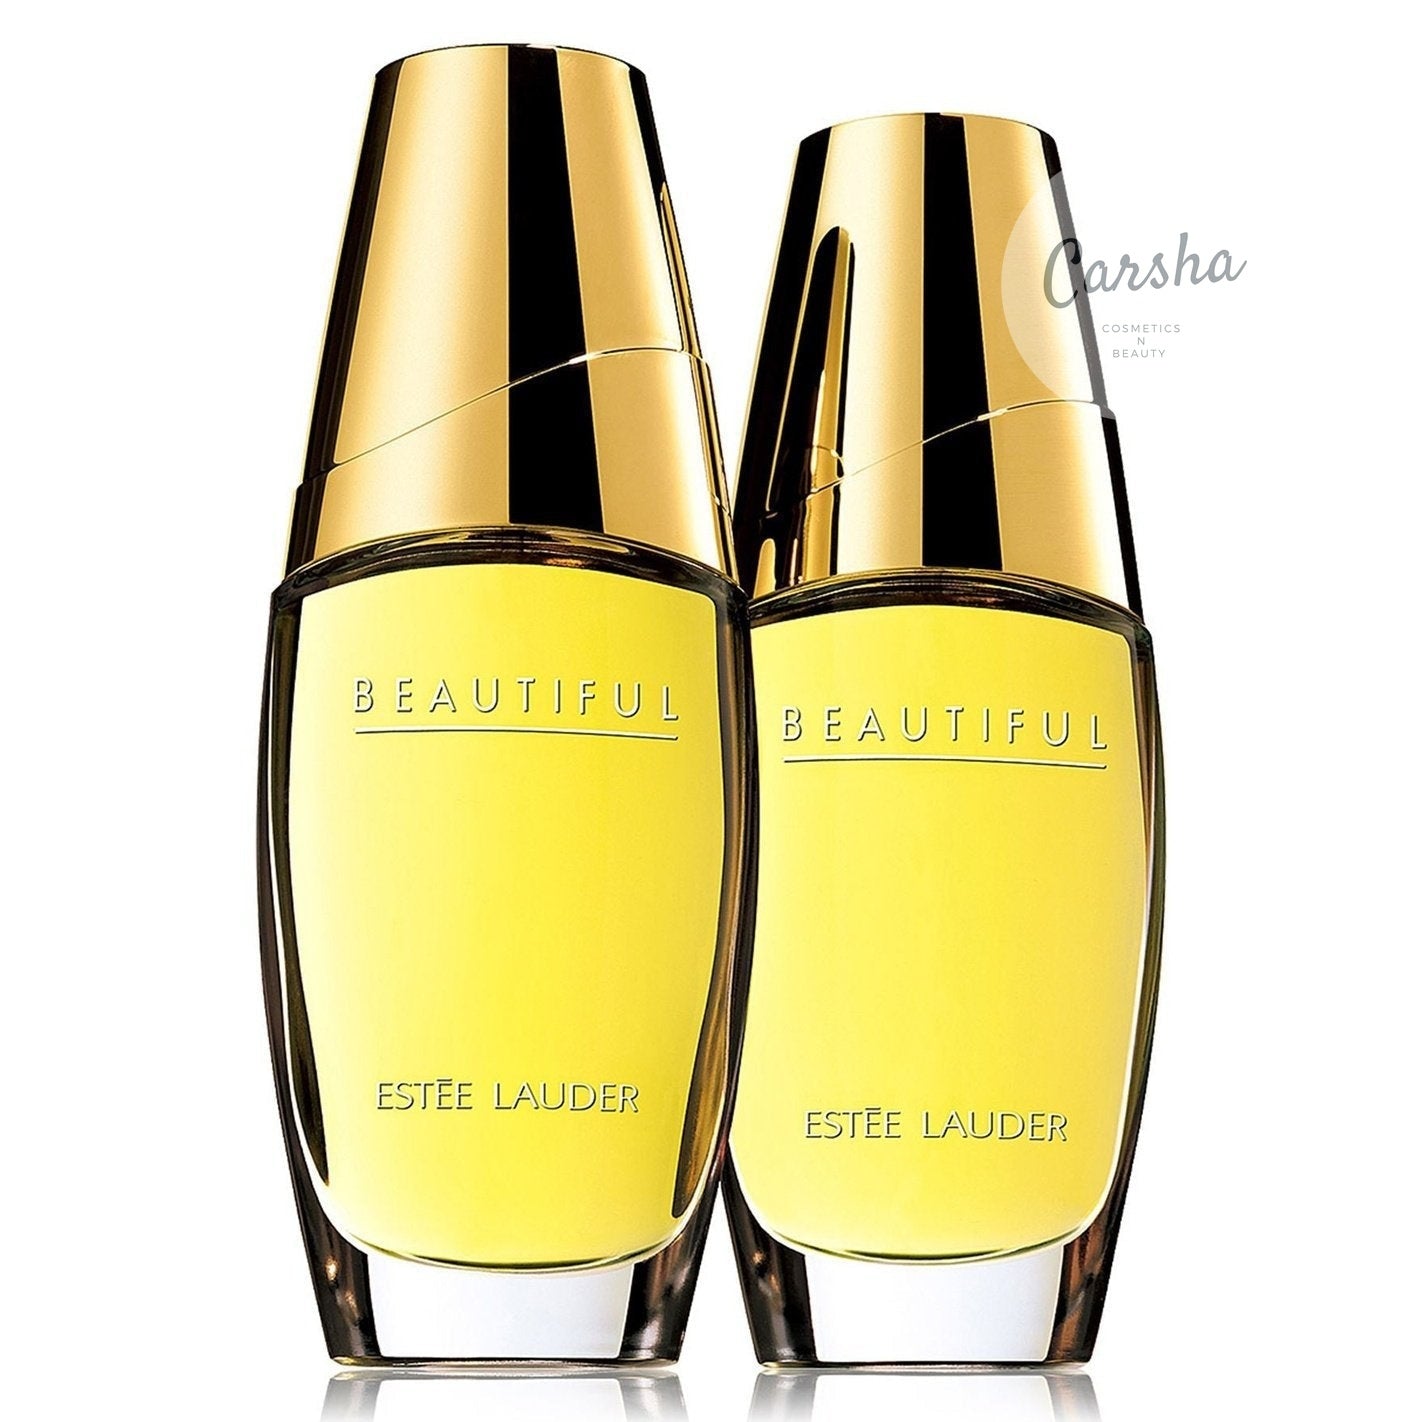 Estee Lauder Beautiful EDP Duo 30ml x 2 | Carsha